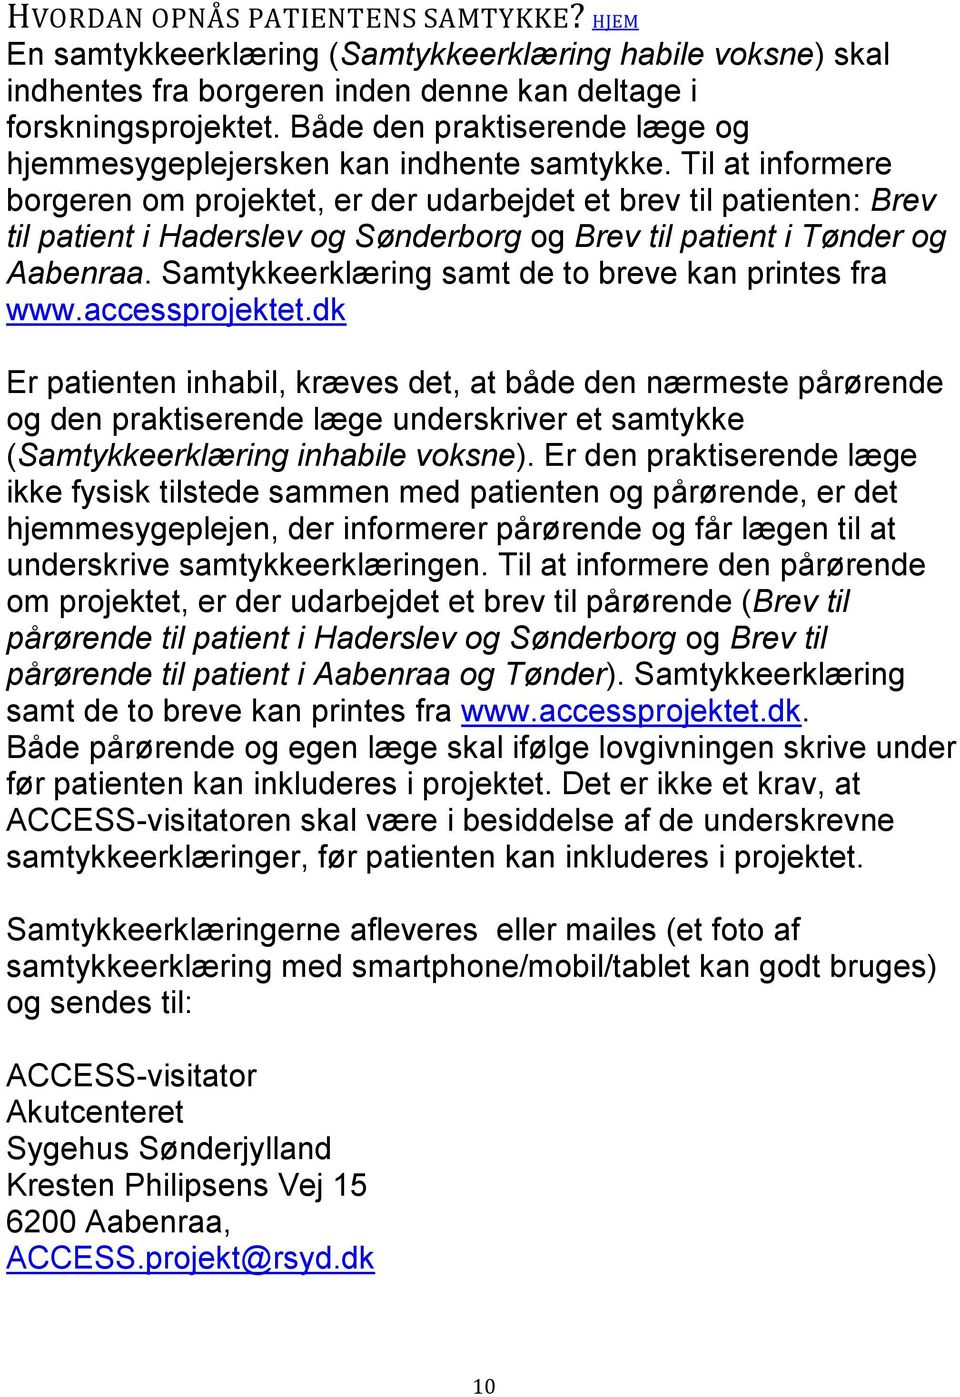 Til at informere borgeren om projektet, er der udarbejdet et brev til patienten: Brev til patient i Haderslev og Sønderborg og Brev til patient i Tønder og Aabenraa.